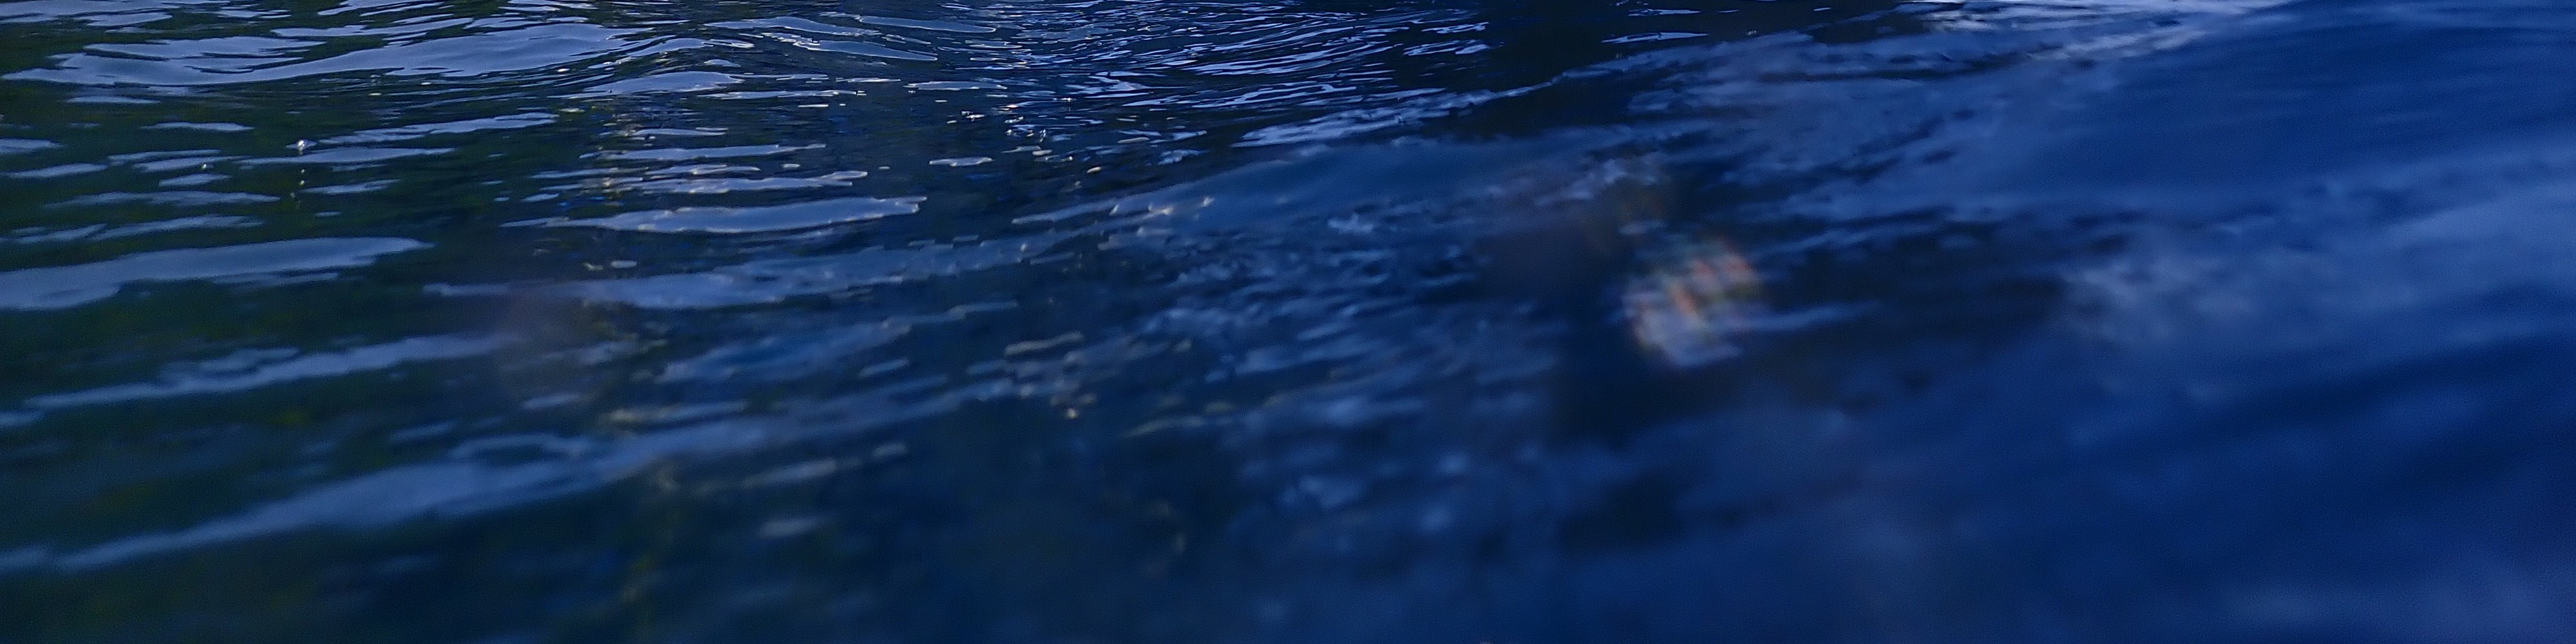 【探索二戰殘骸遺跡】科隆島 PADI 潛水中心進階潛水課程